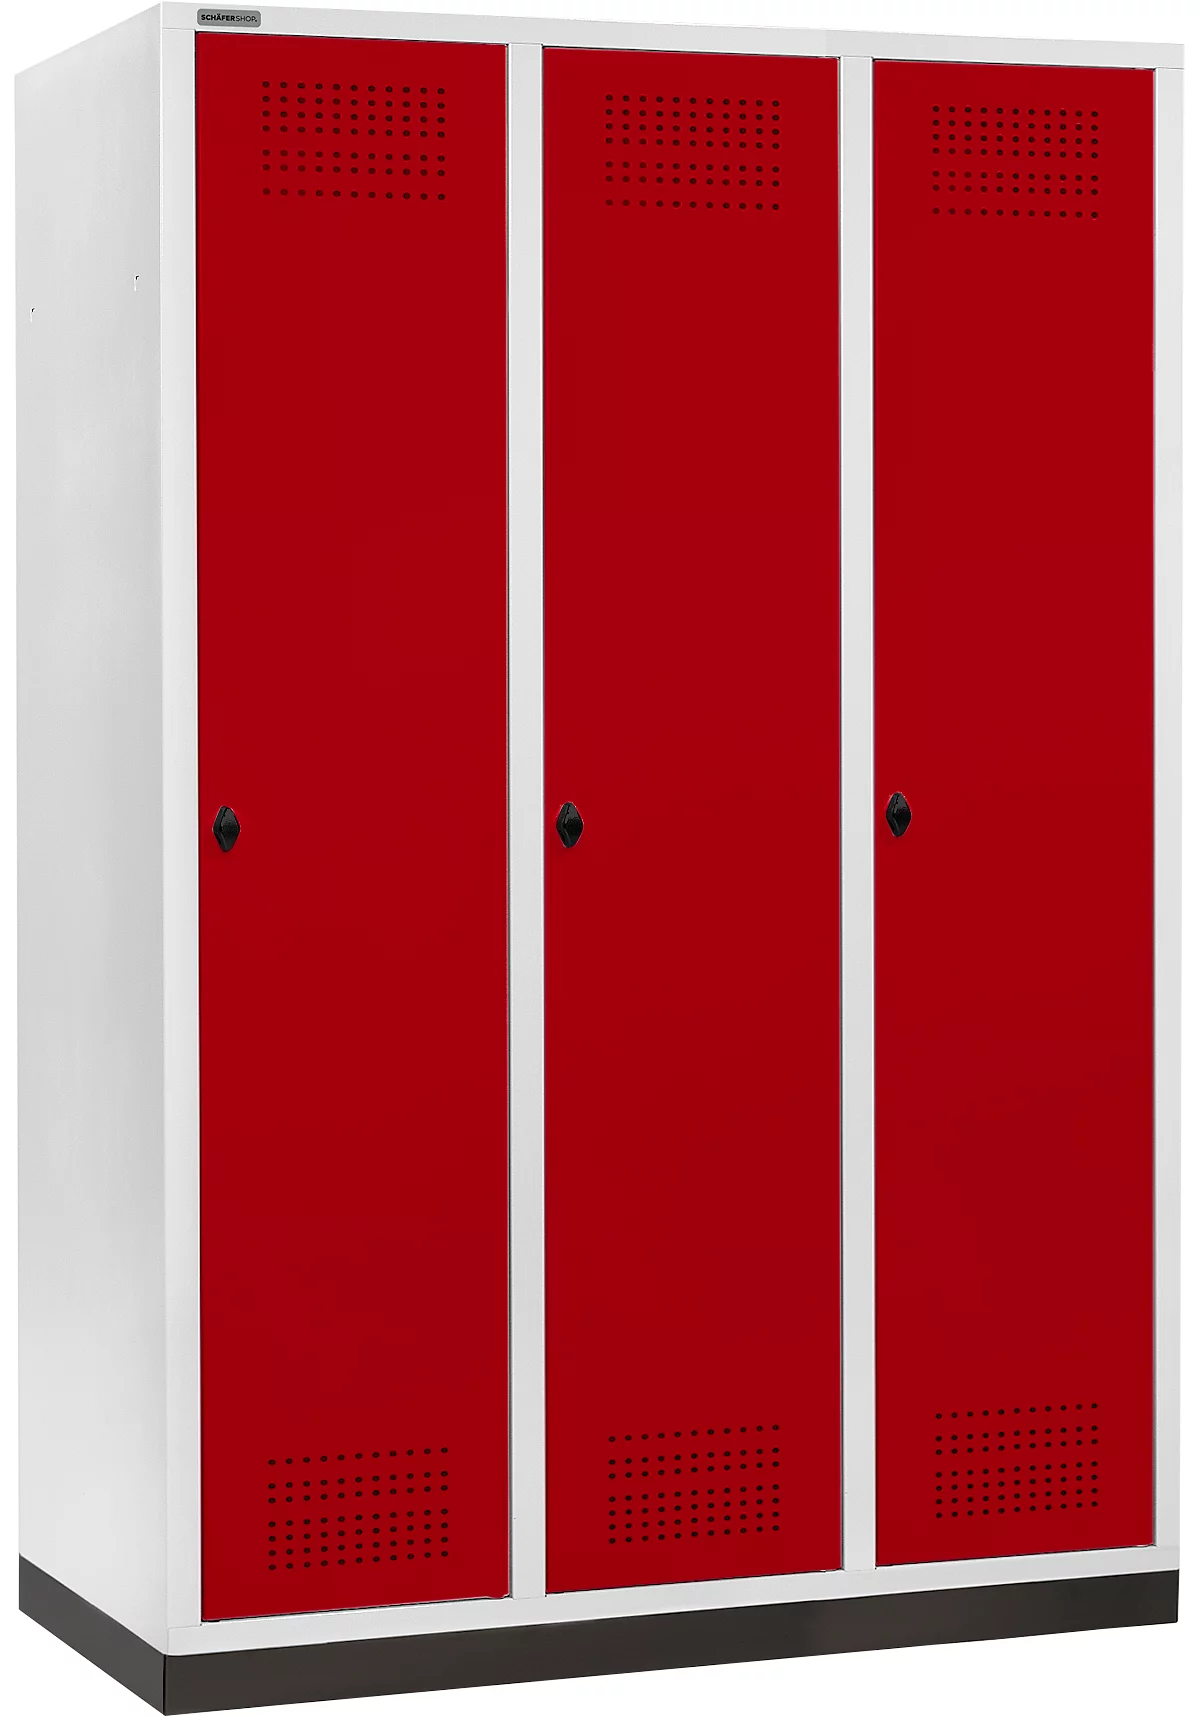 Schäfer Shop Genius Taquilla con zócalo, 3 compartimentos, anchura compartimento 400 mm, cierre de pasador giratorio de seguridad, gris luminoso/rojo rubí